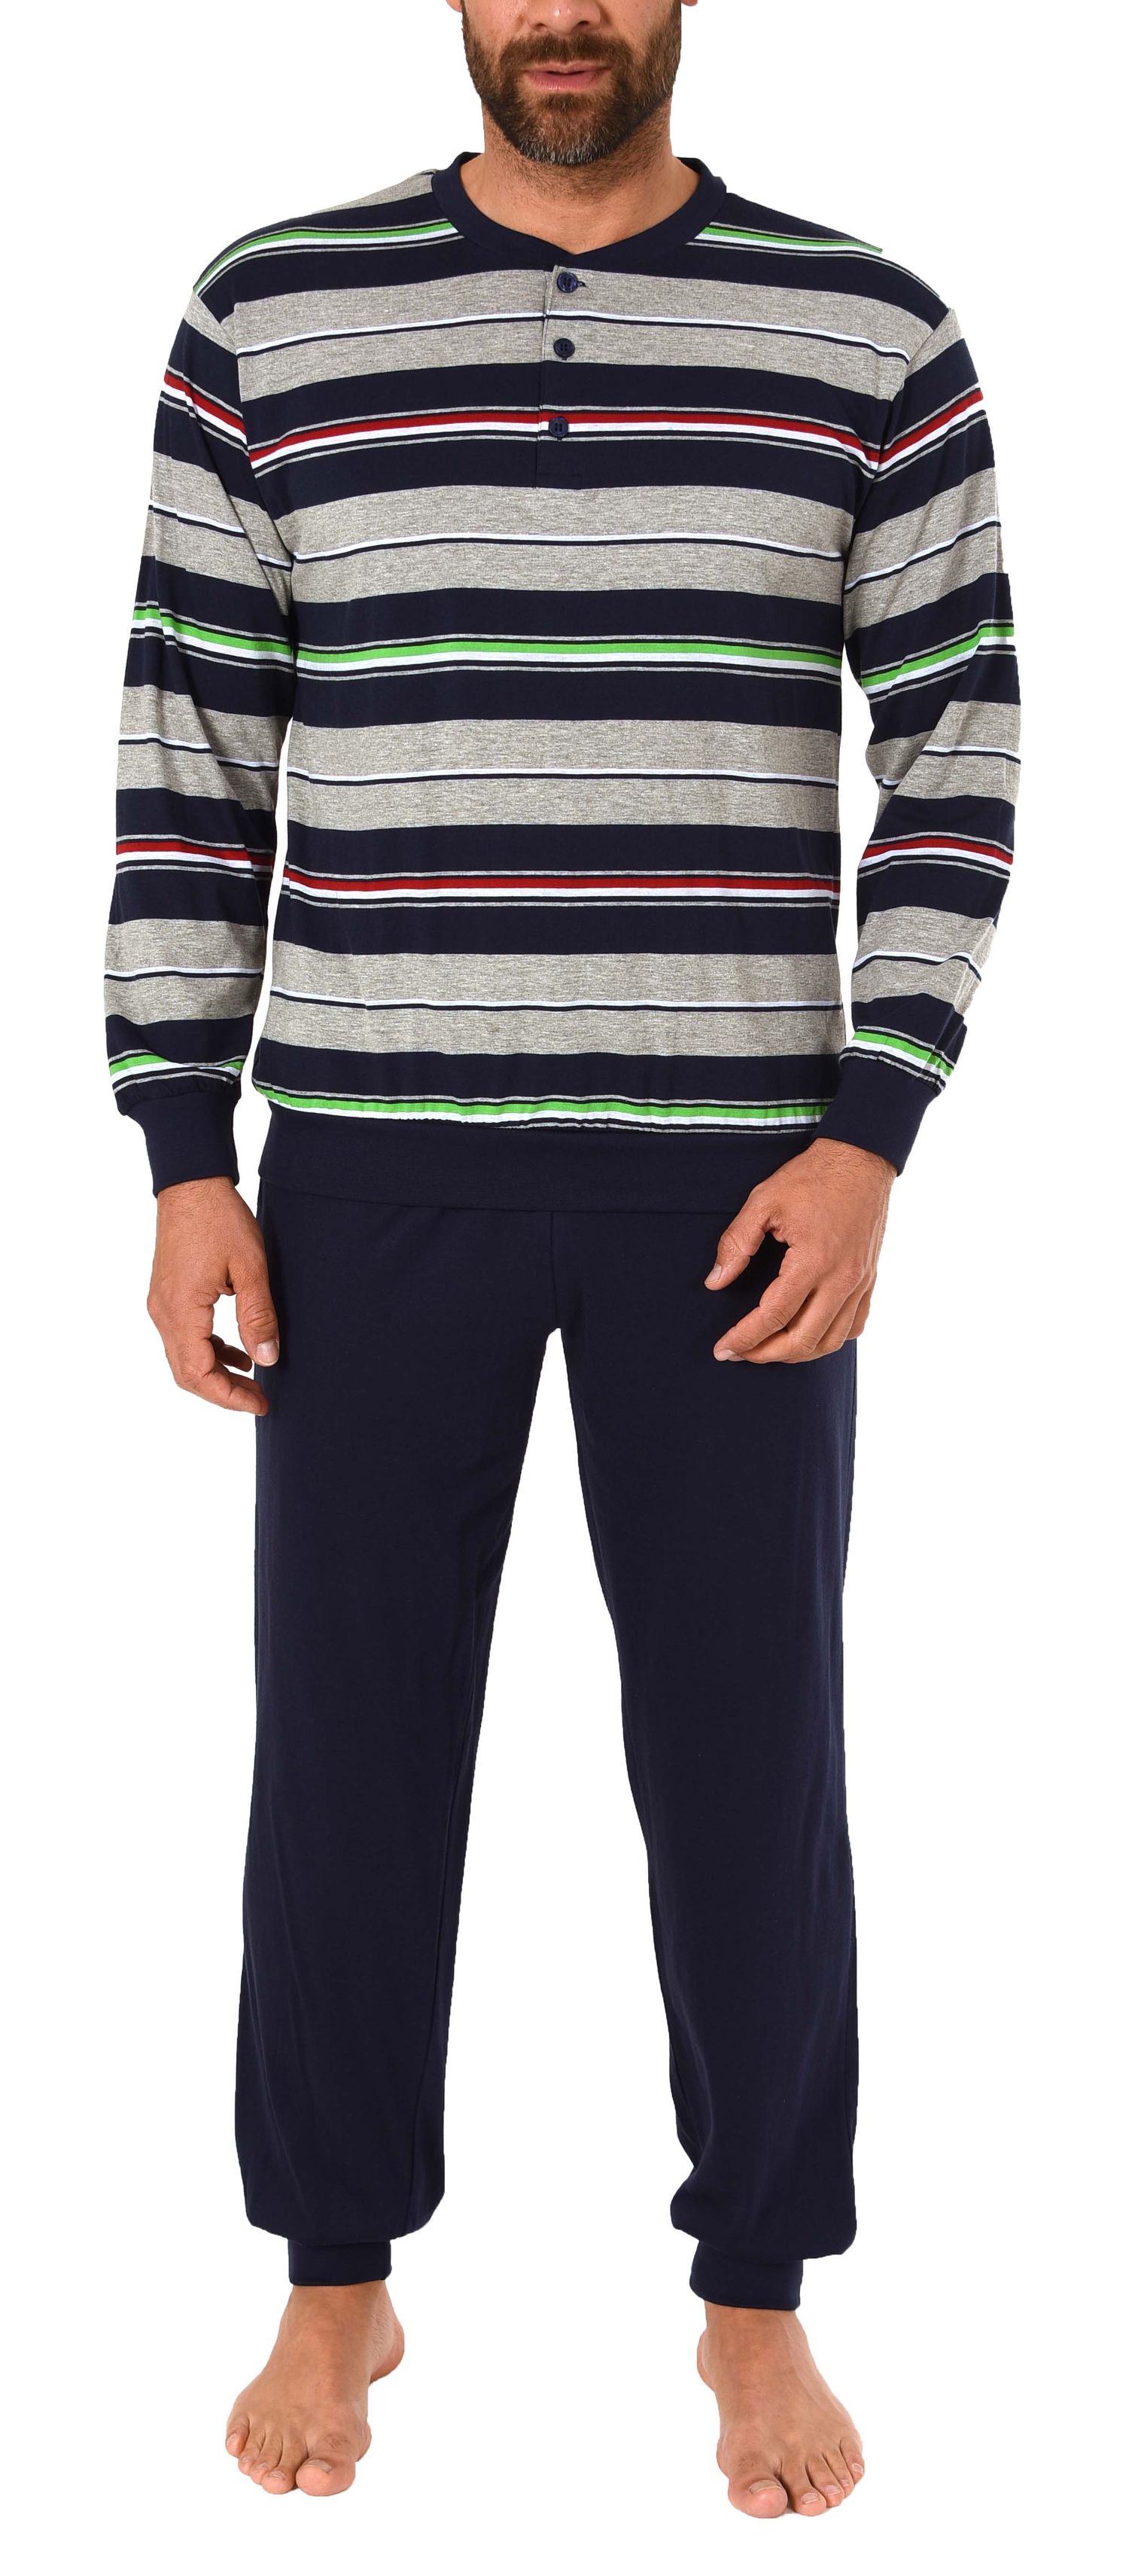 Herren Pyjama Schlafanzug lang mit Bündchen und Knopfleiste in Streifenoptik - 101 90 752